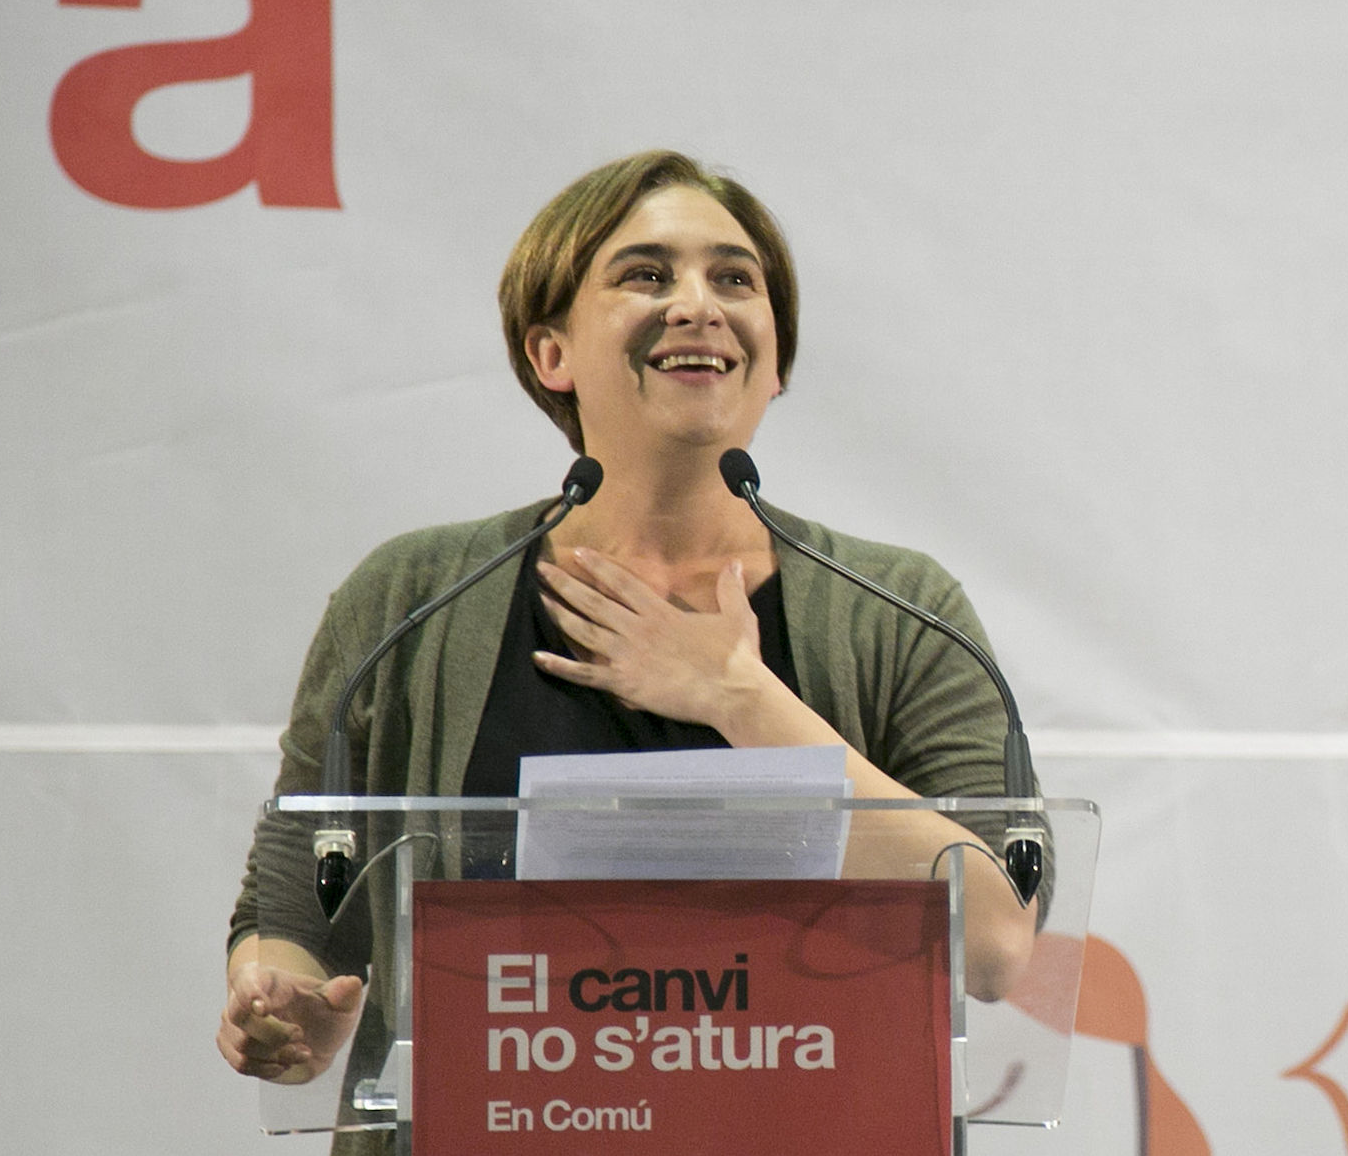 Colau intervé en la crisi amb Podem: “La confluència no perilla”